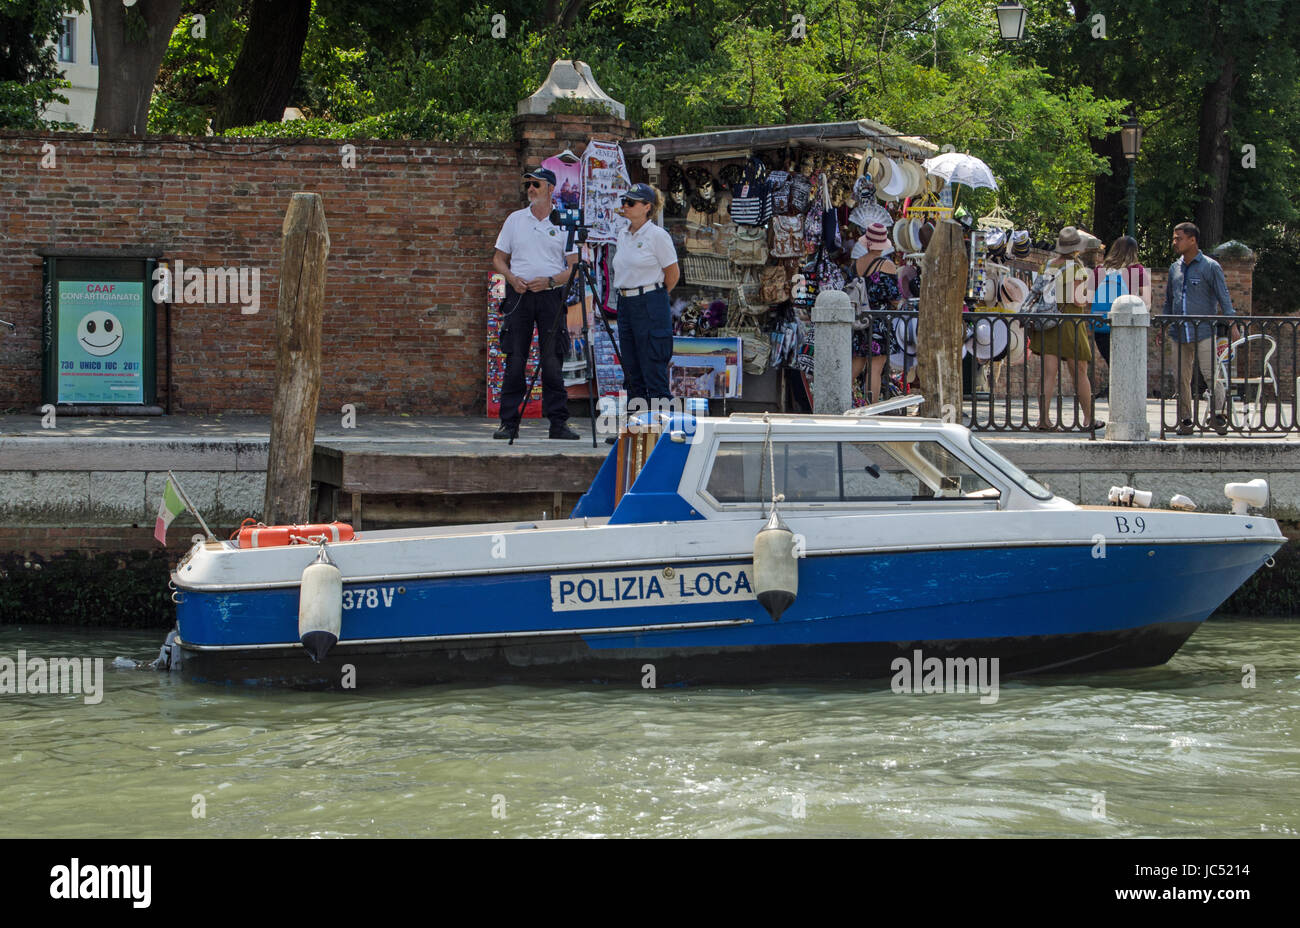 Venedig, Italien - 13. Juni 2017: Zwei Polizisten eine Radarfalle neben einem geschäftigen Stall mit touristischen Souvenirs am Canal Grande in Venedig tätig. Stockfoto